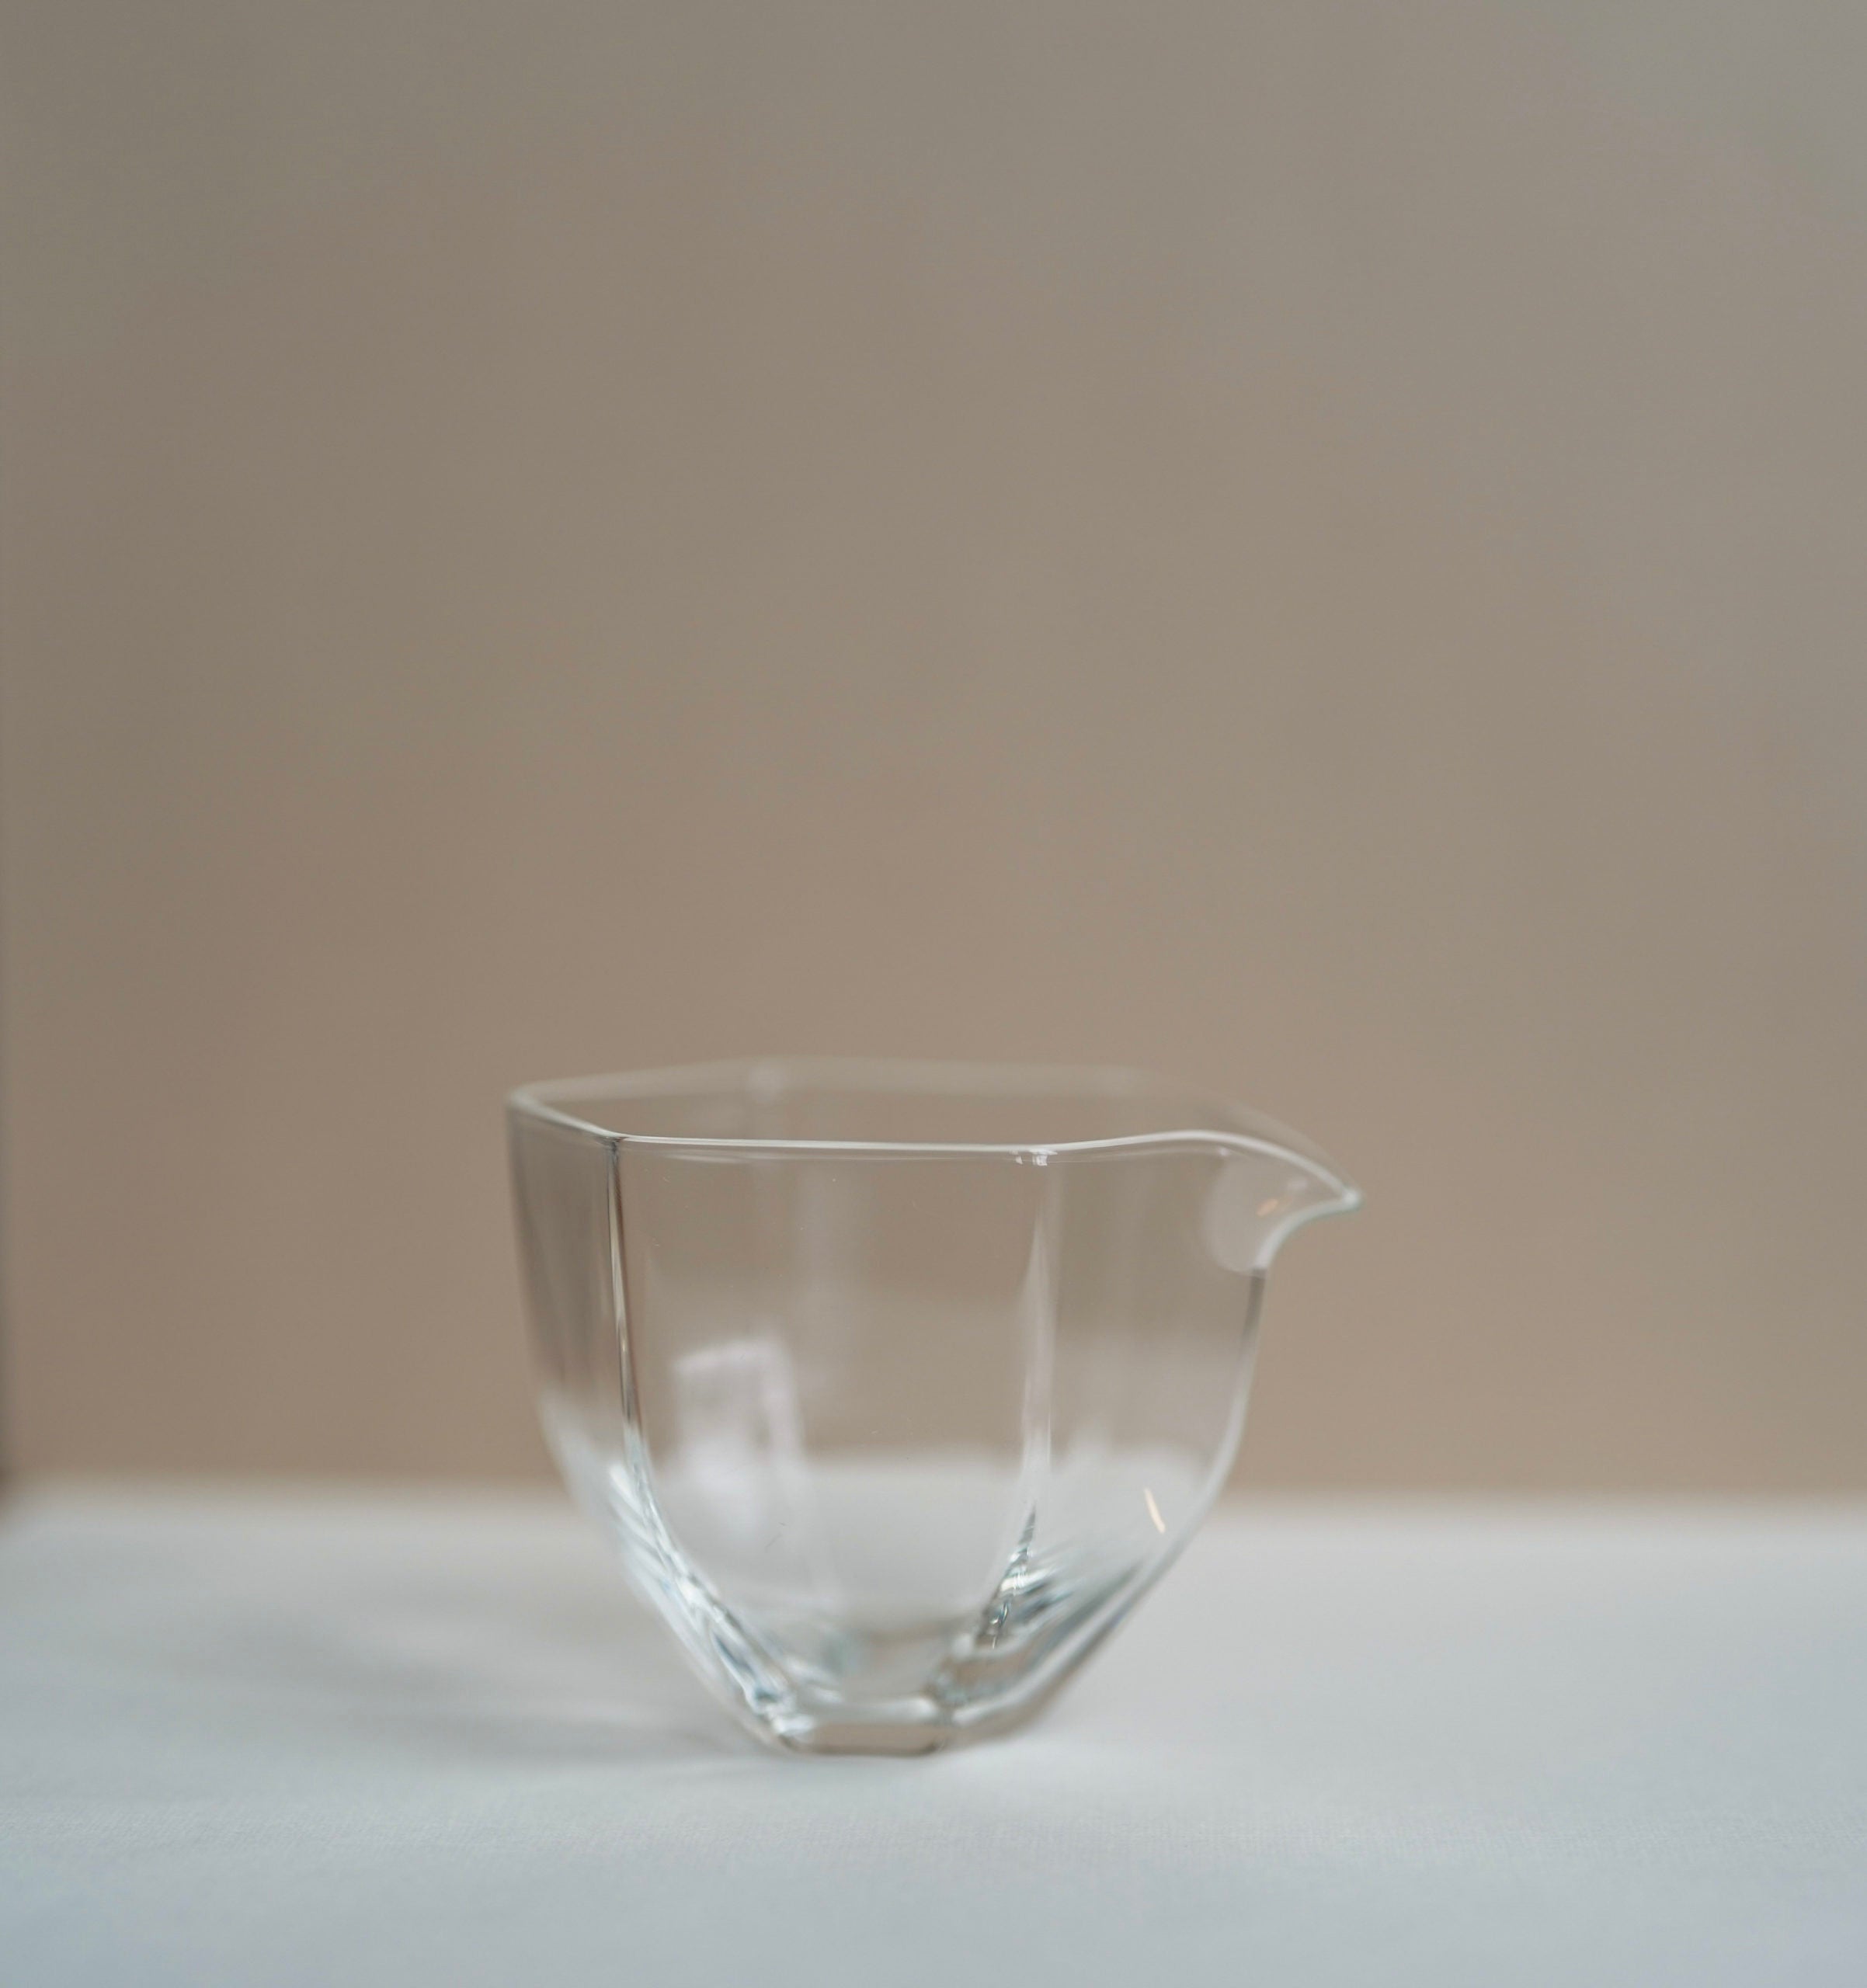 Gongfu Tea Pitcher - Glass Gong Dao Bei, Cha Hai 350ml